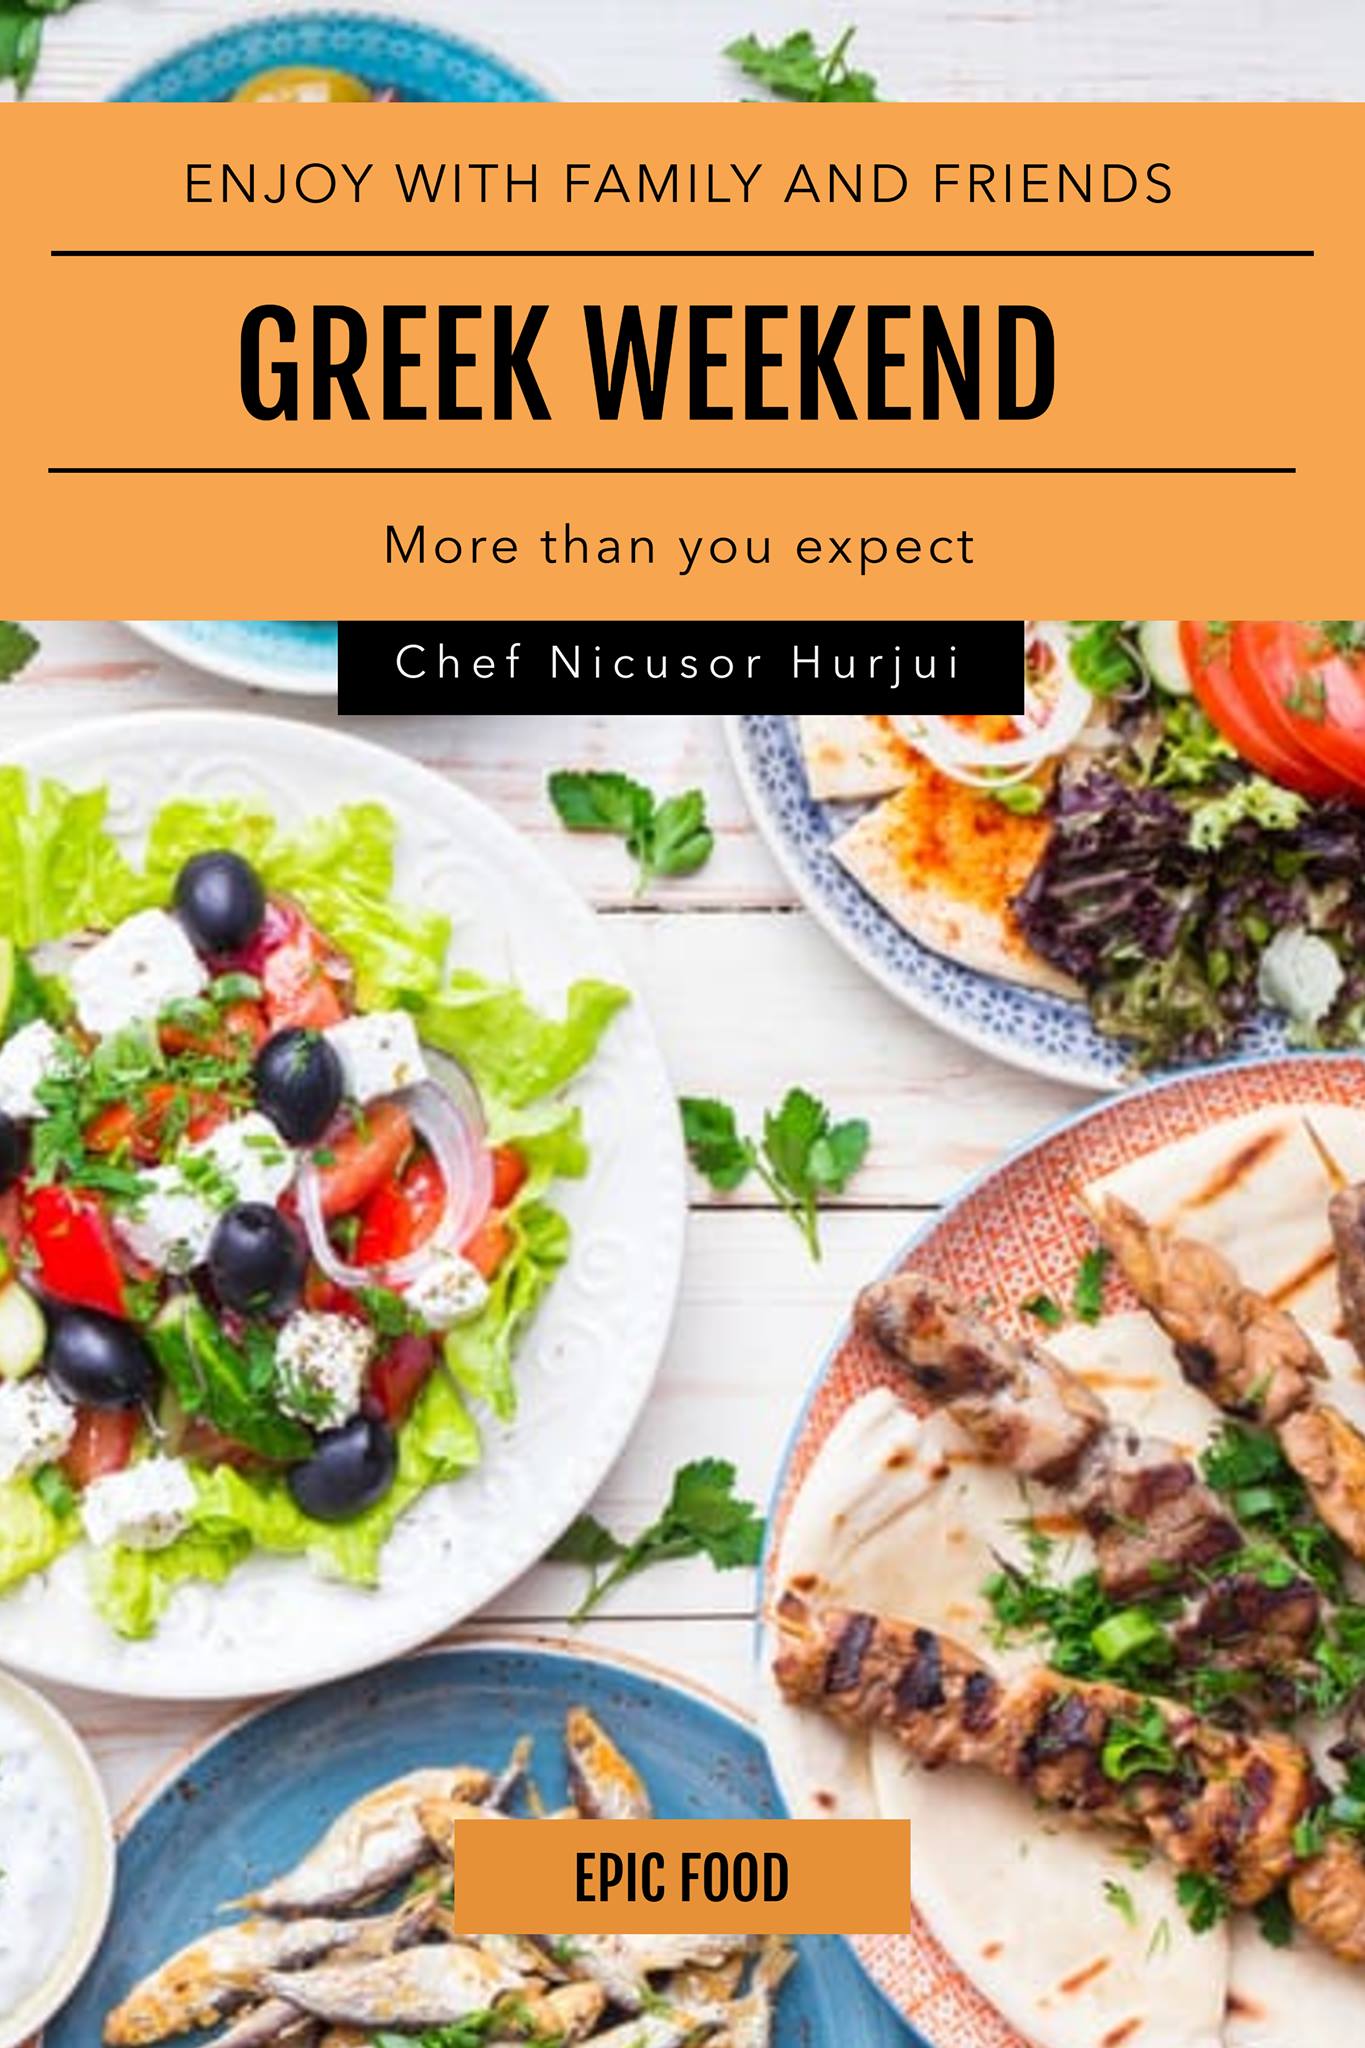 Greek weekend